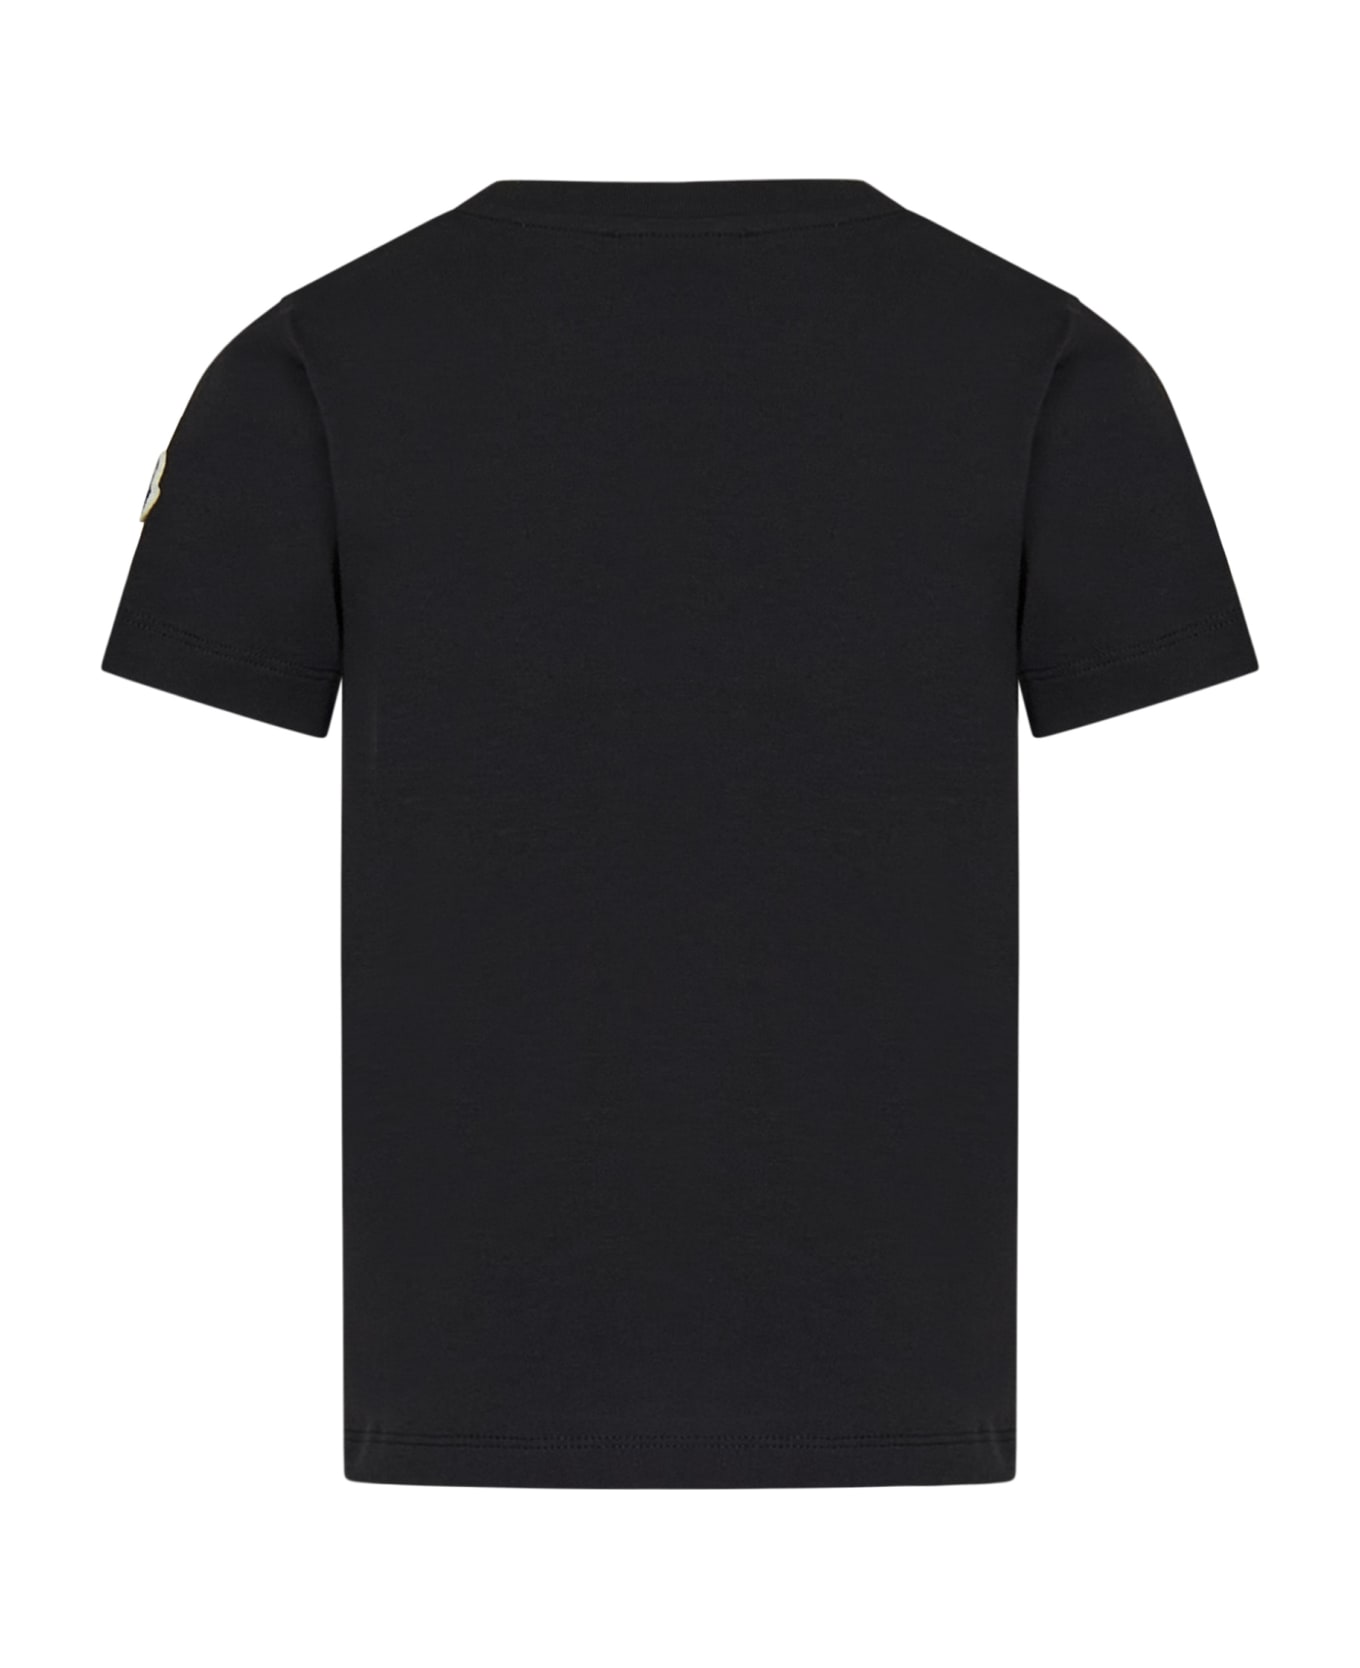 Moncler Enfant T-shirt - Black